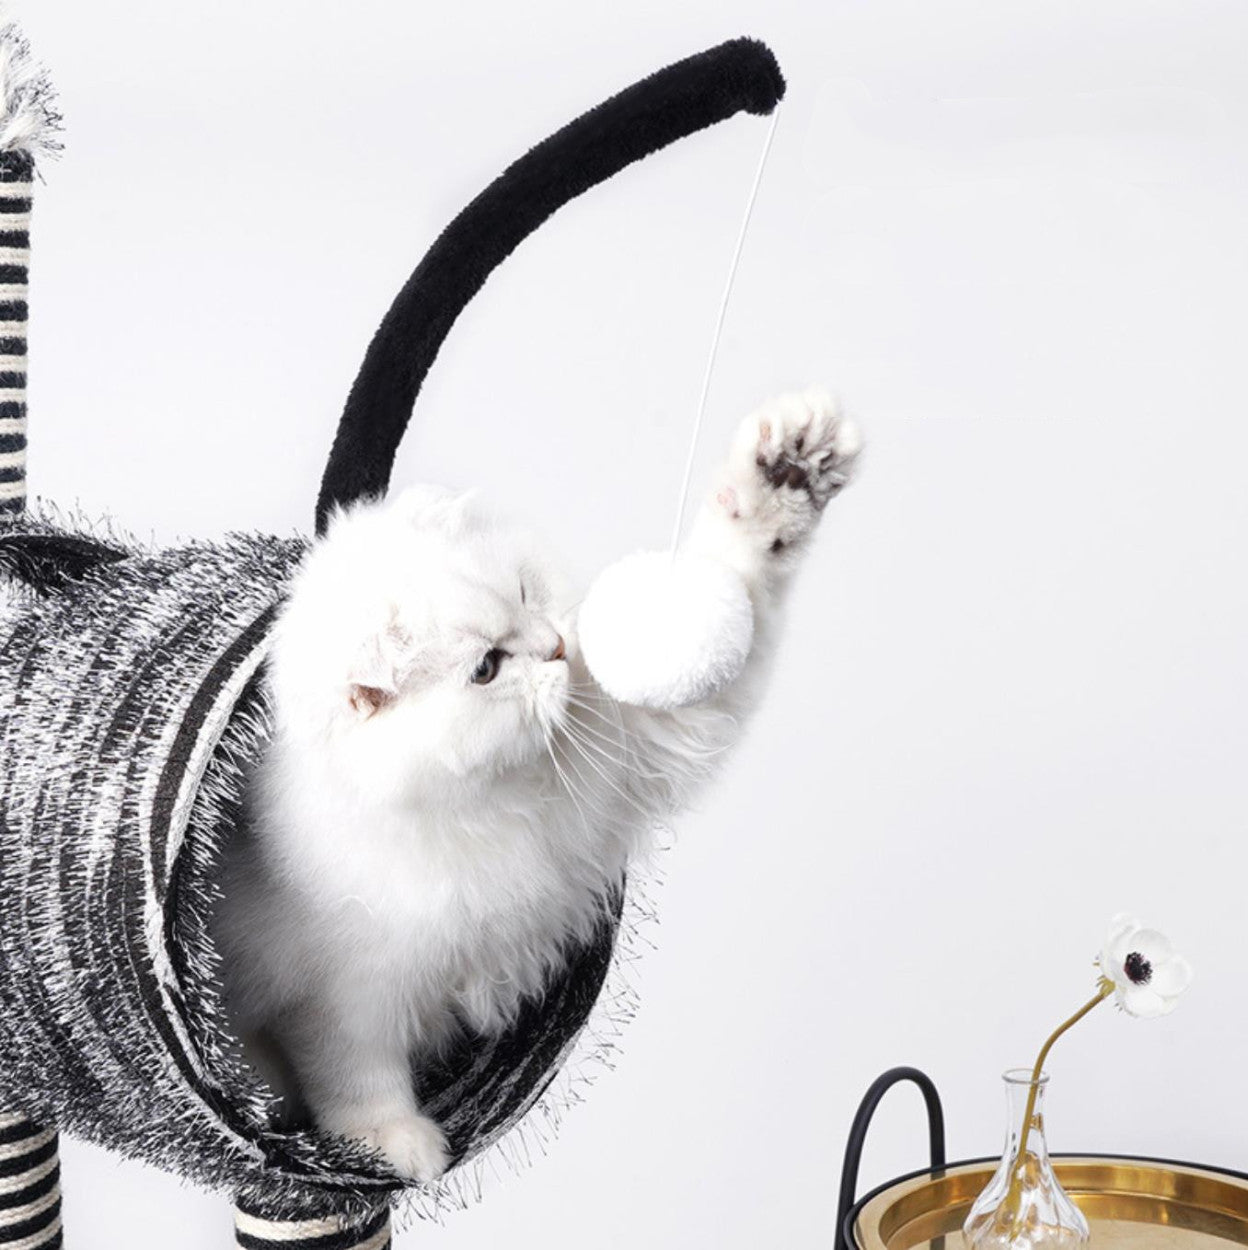 キャットタワー 猫タワー Panni インテリア サイザル シマウマ トンネル 動物型 爪とぎ 猫 登り降りしやすい 豪華なとまり木 送料無料 頑丈耐久 当社の 猫